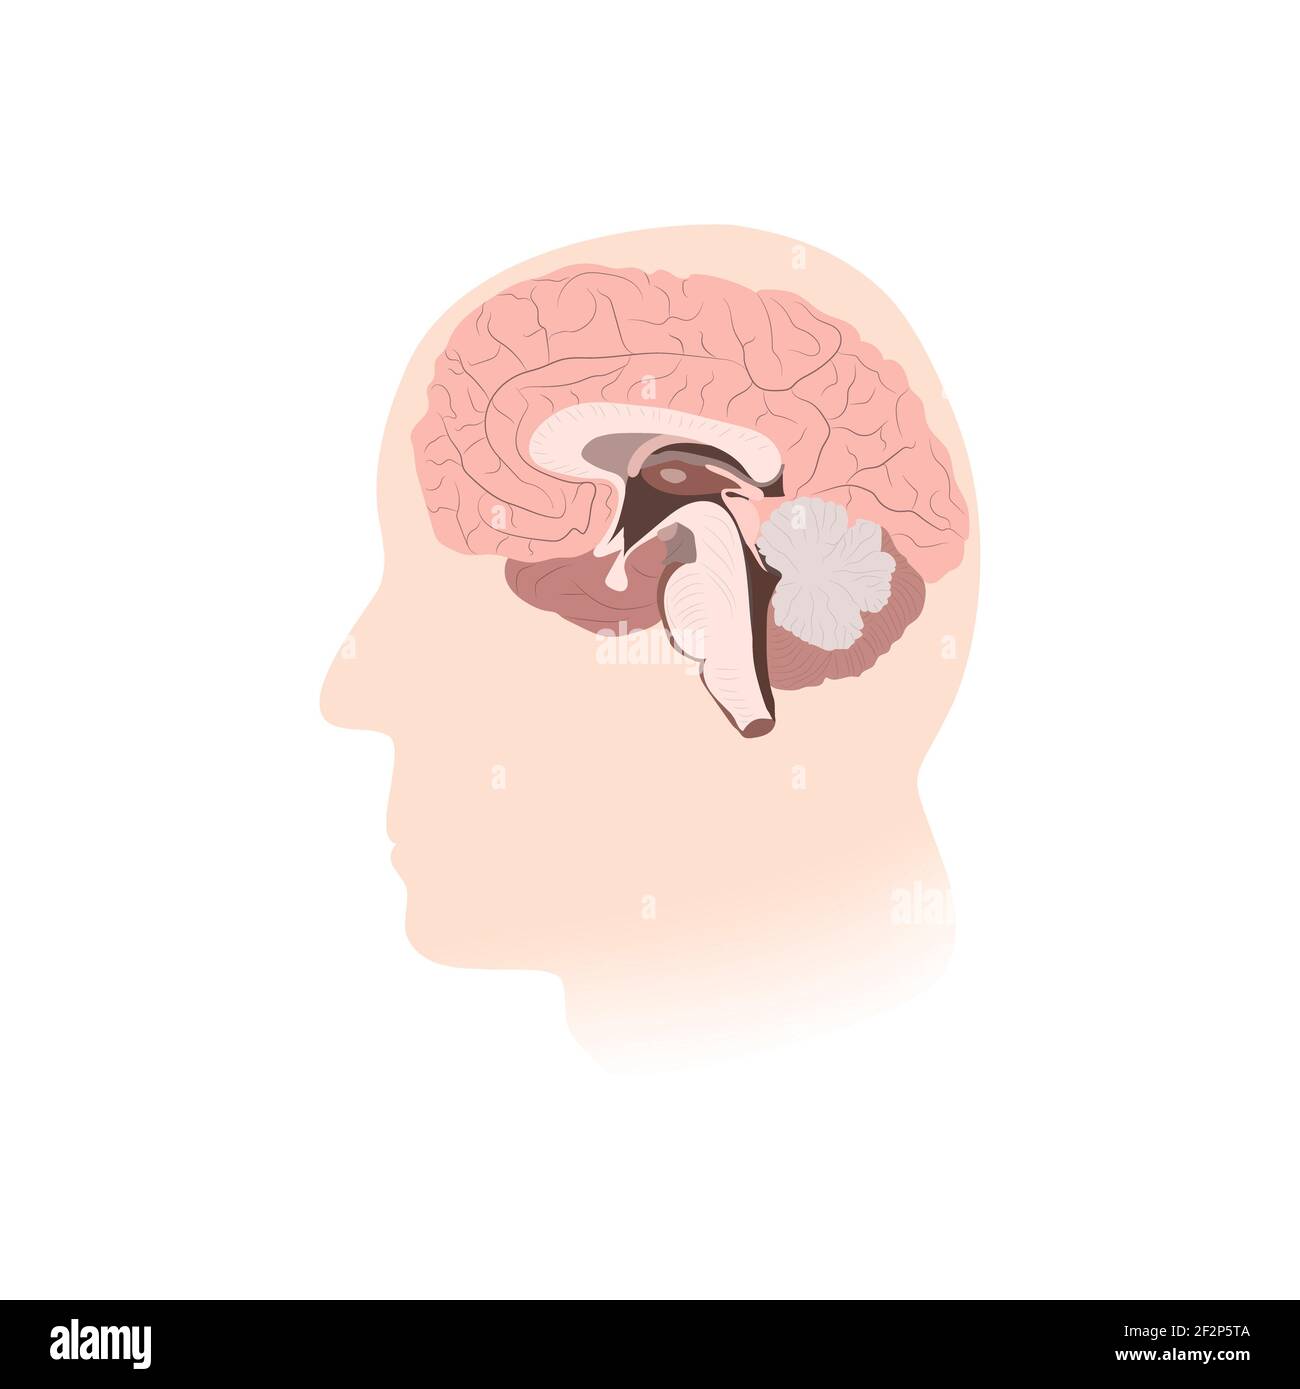 Inner view of brain, illustration Stock Photo